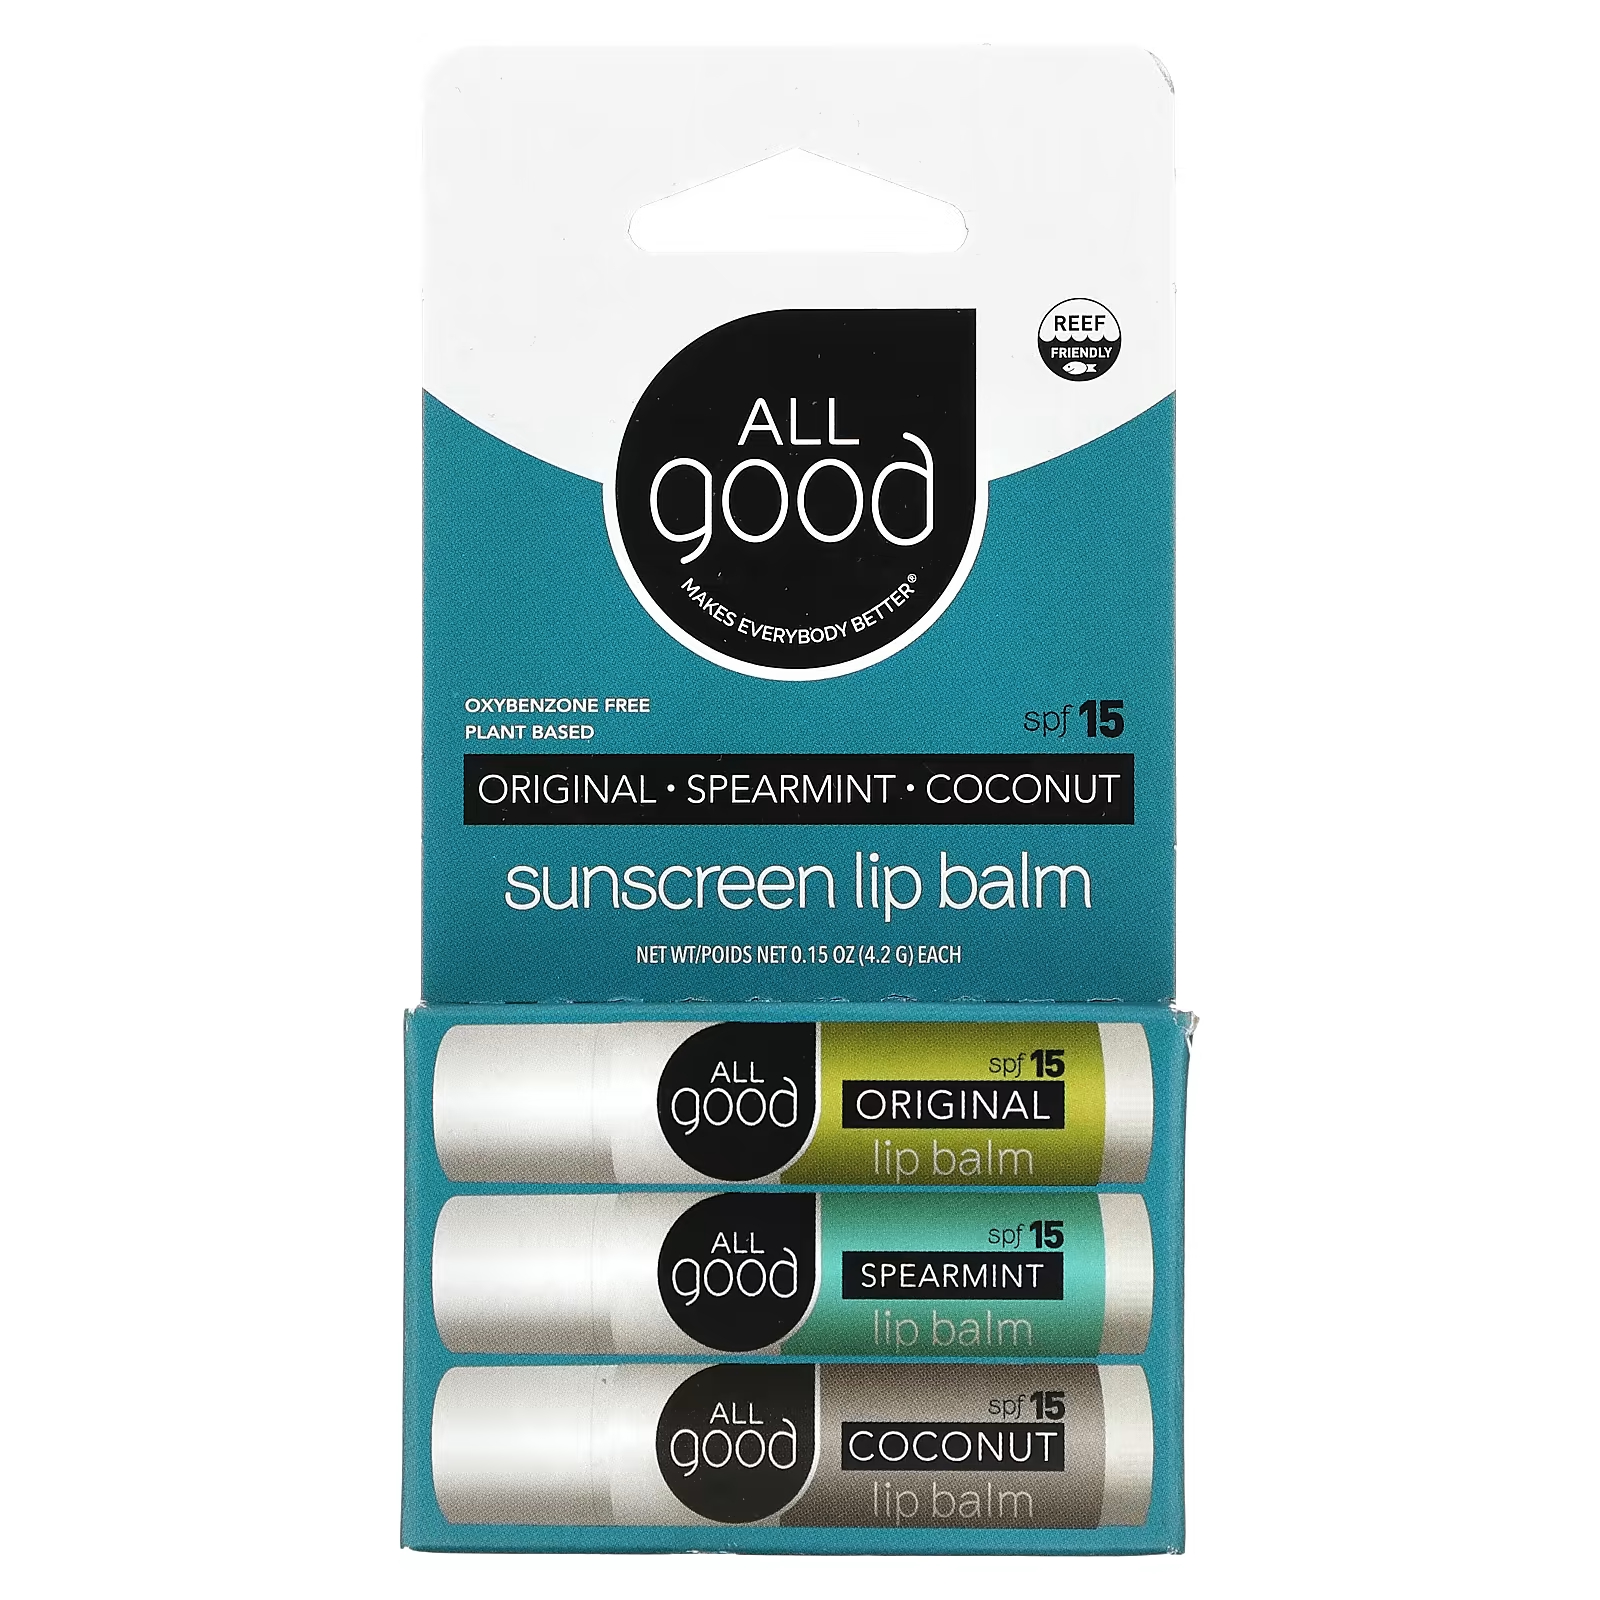 Солнцезащитный бальзам для губ All Good Products, SPF 15, 3 упаковки, 4,2 гр. all good products органический бальзам для губ оригинальный 3 шт в упаковке по 4 2 г 0 15 унции